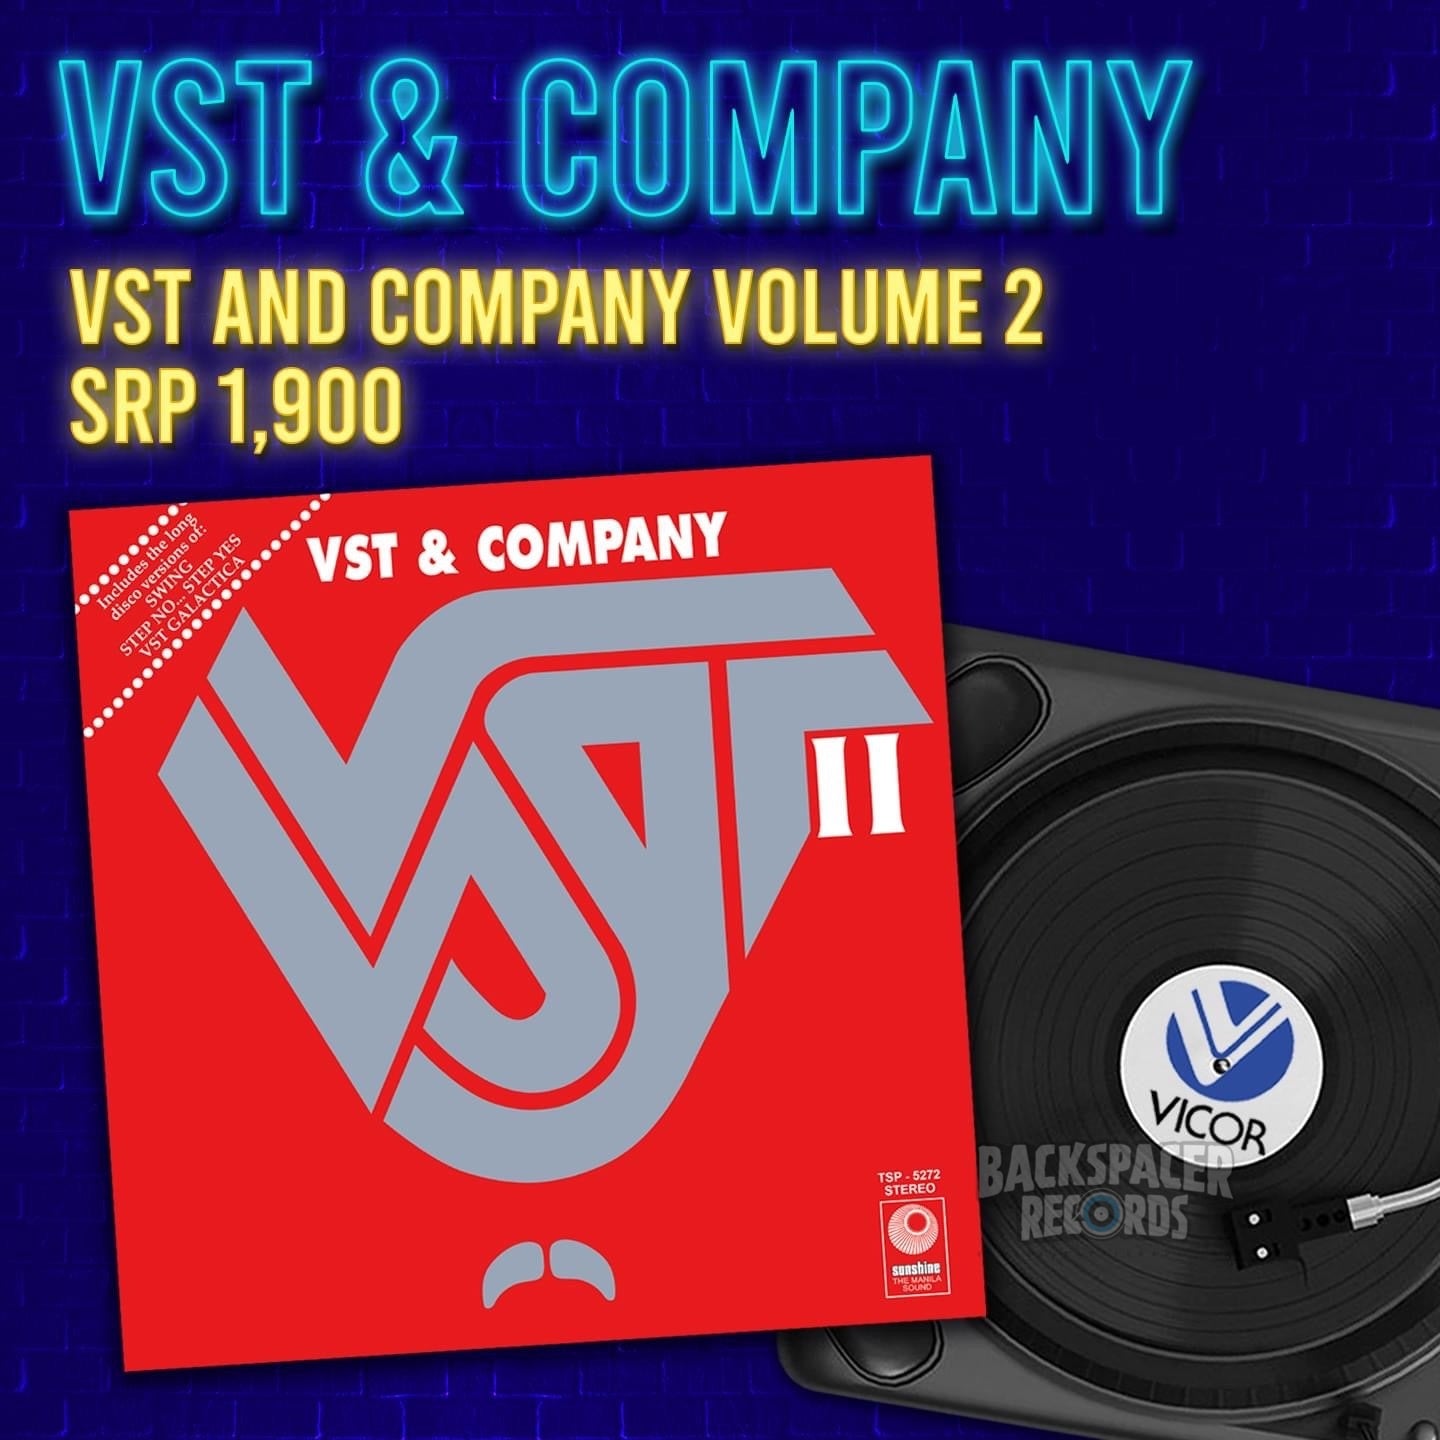 VST & Co. - VST 2 LP (Vicor Reissue)